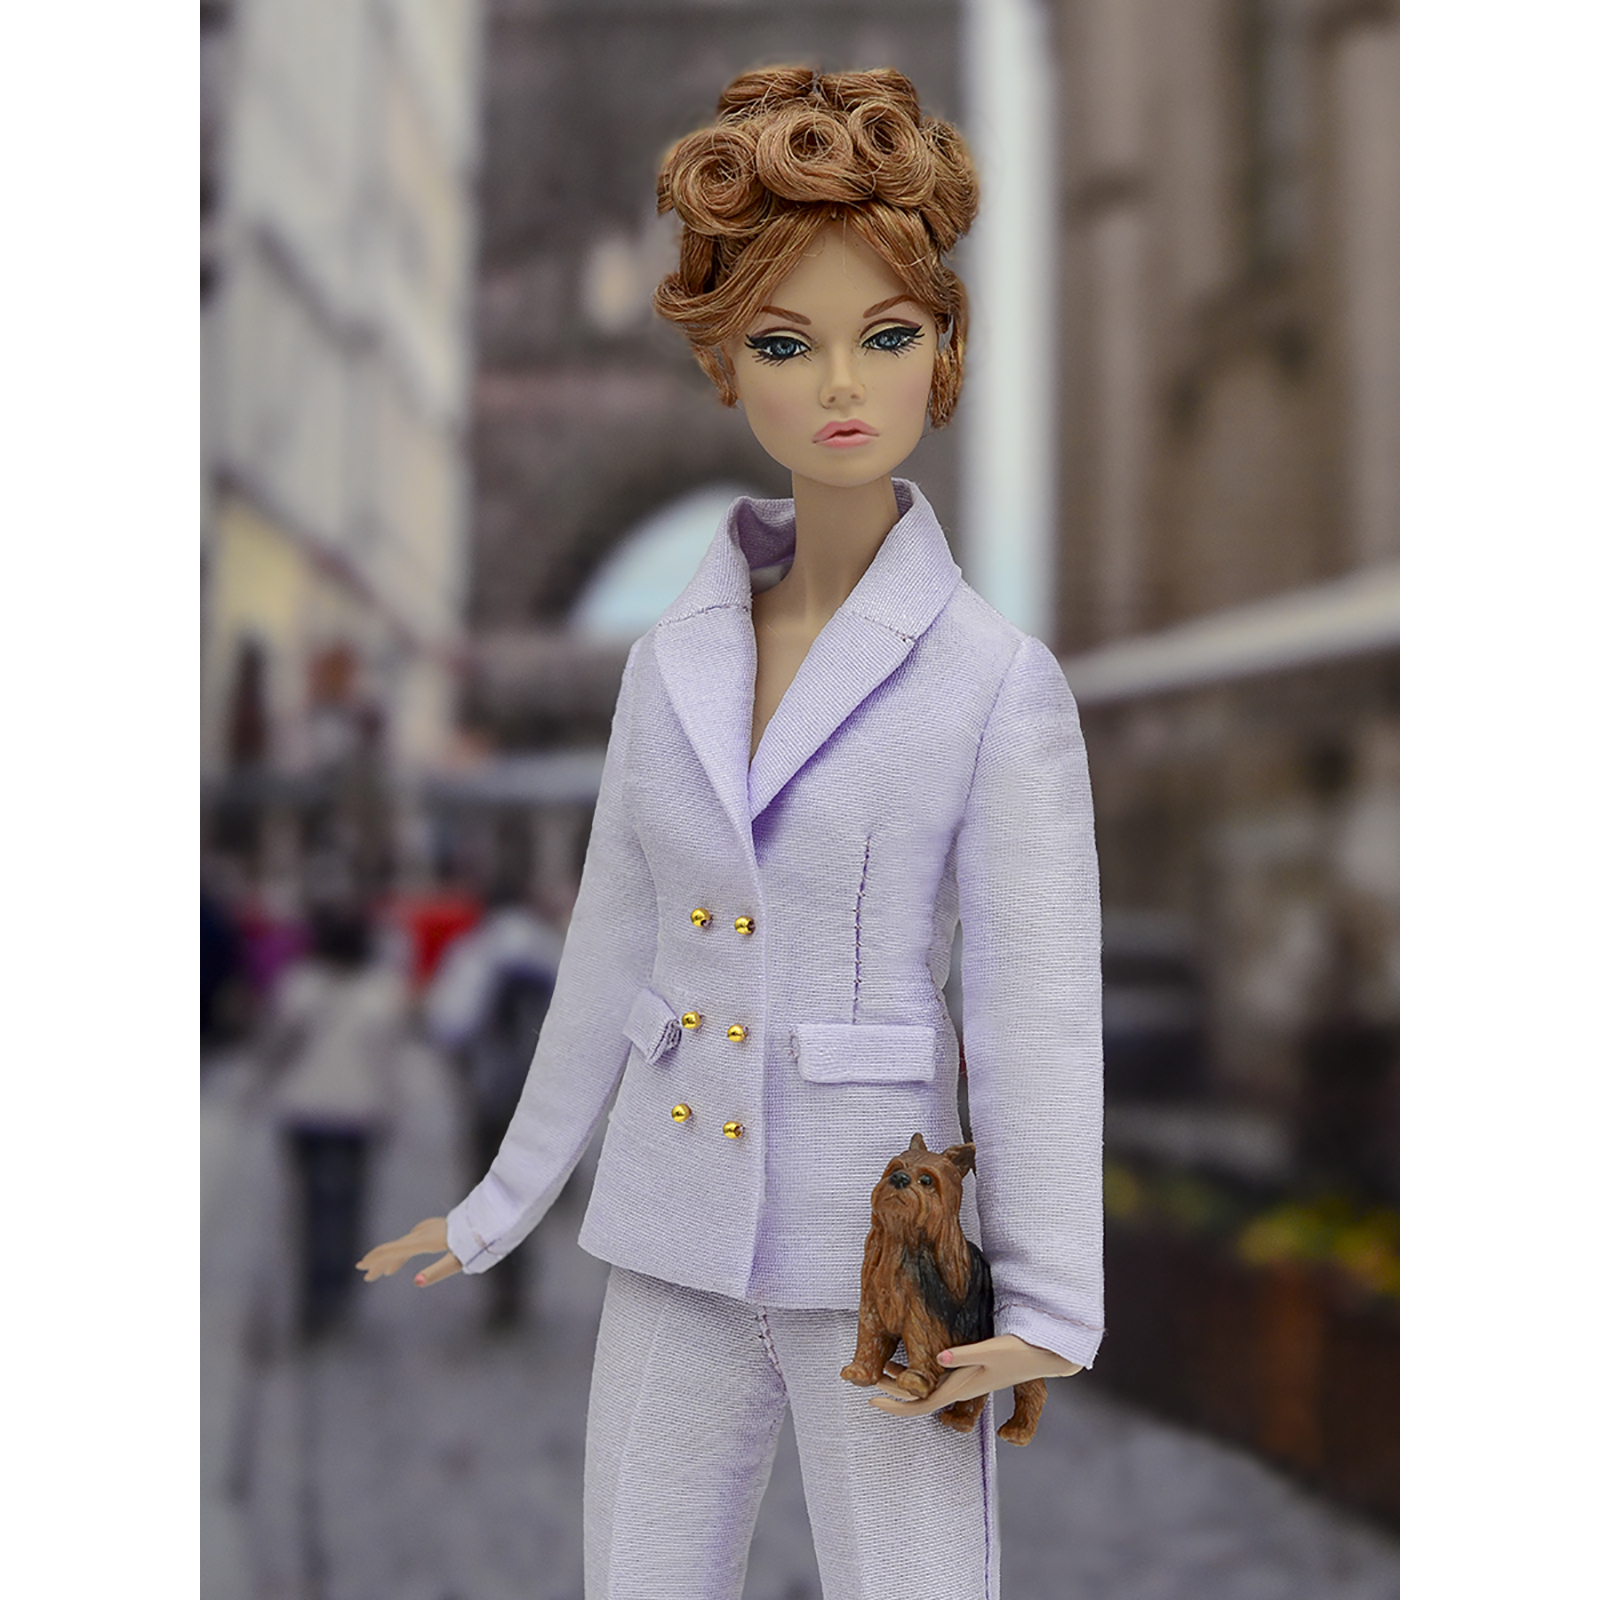 Шелковый брючный костюм Эленприв Фиолетовый для куклы 29 см типа Барби FA-011-11 - фото 3